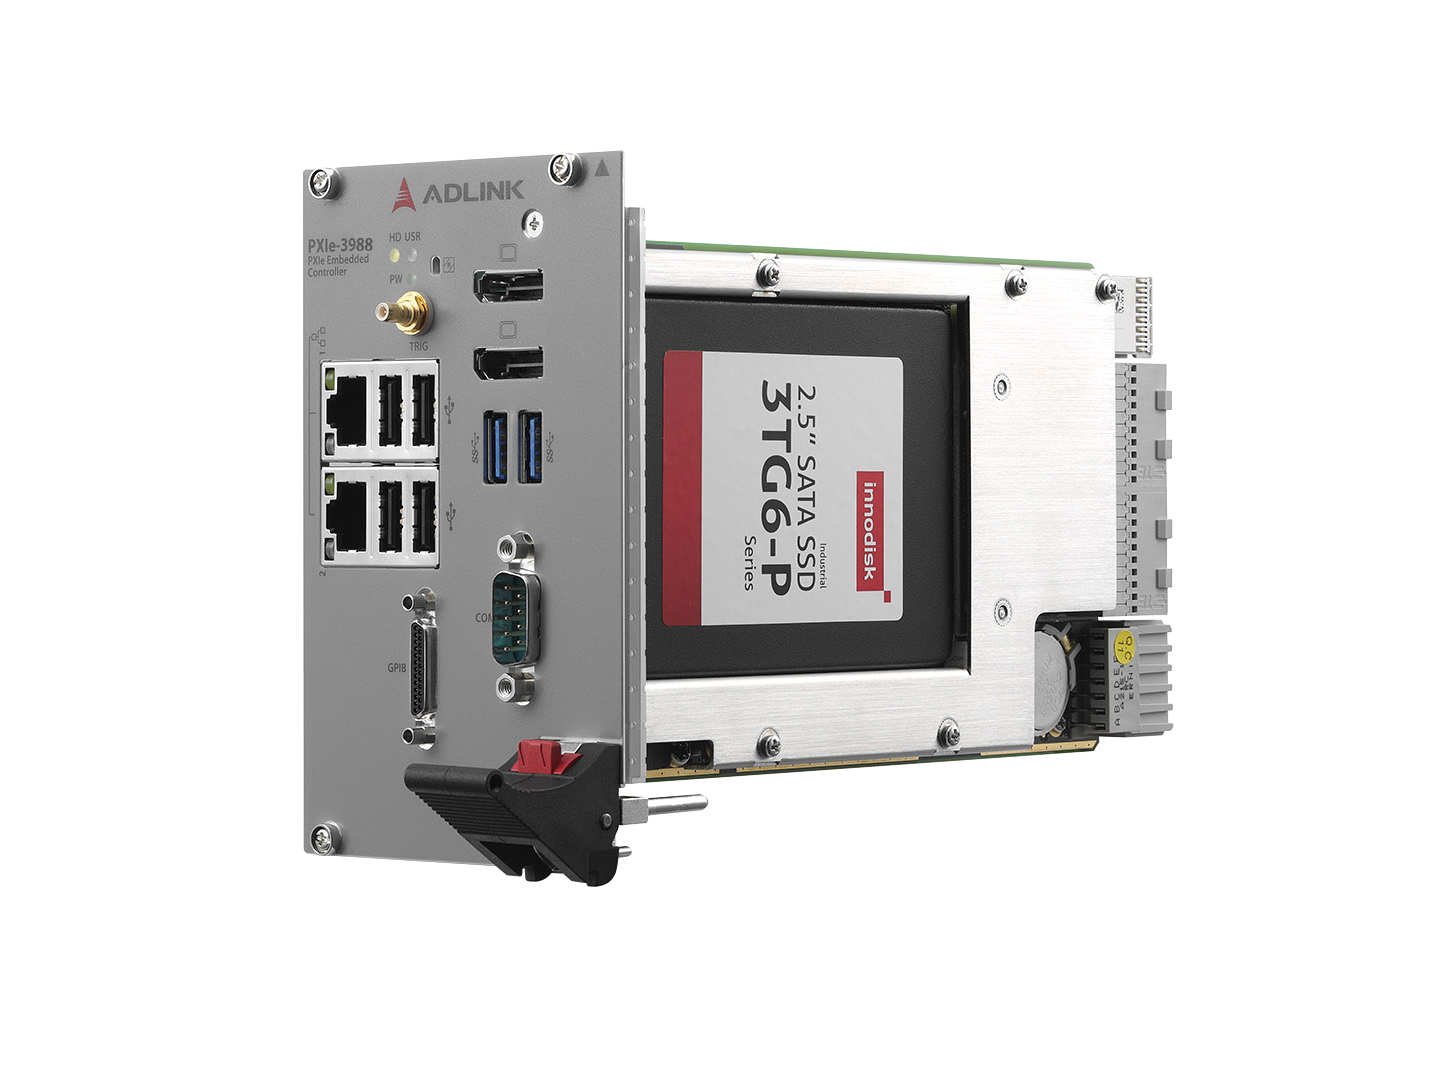 PXIe-3988 контроллер серверного уровня для сложных инструментальных задач